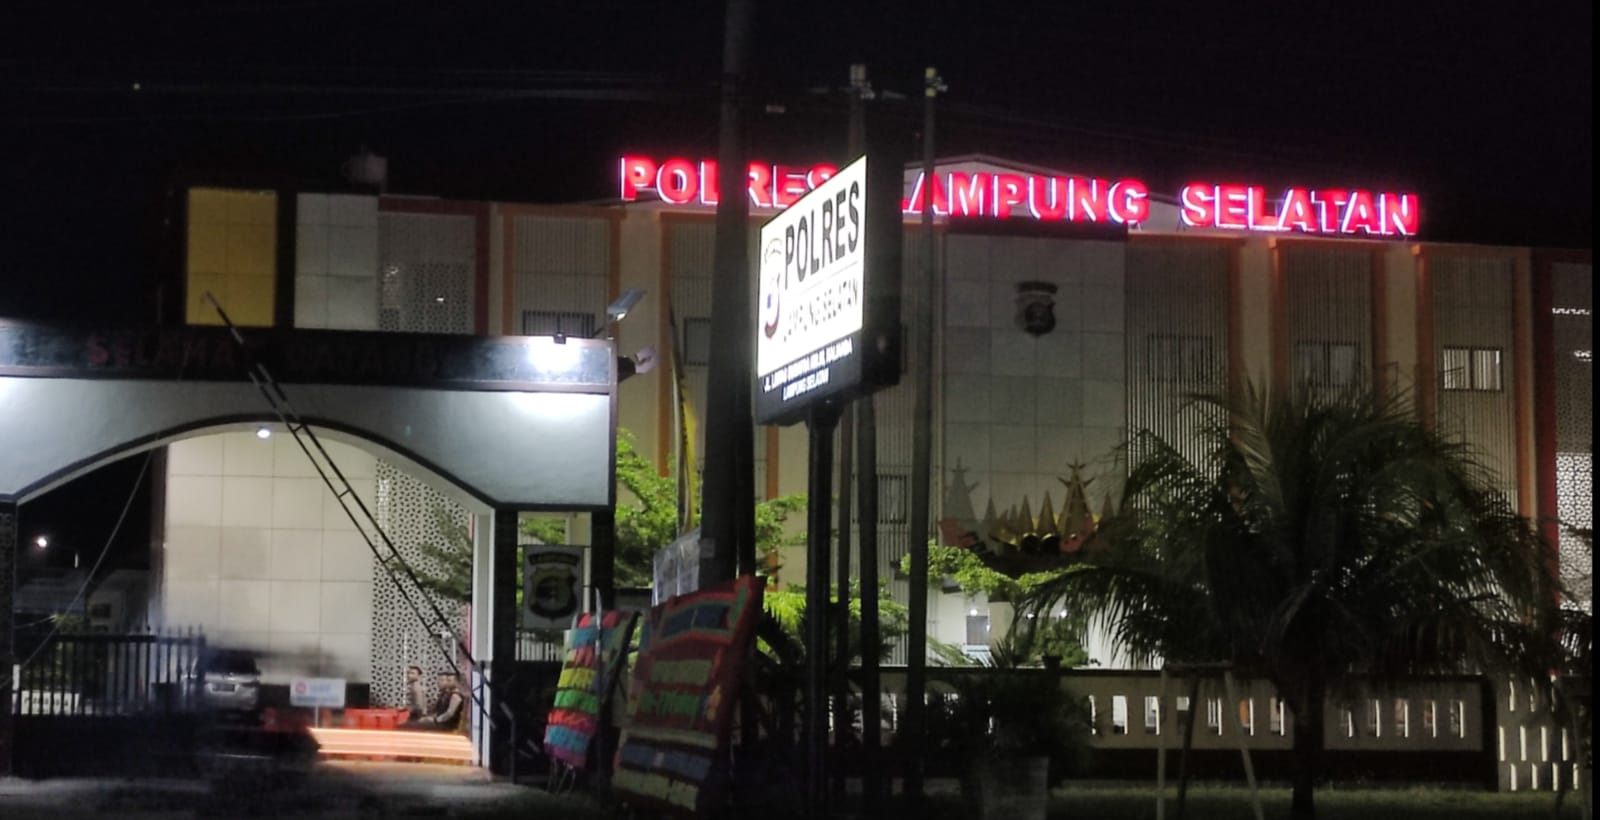 3 Anggota Polres Lampung Selatan yang Terjerat Kasus Narkoba Dikabarkan 'Bernyanyi', Siapa Saja?